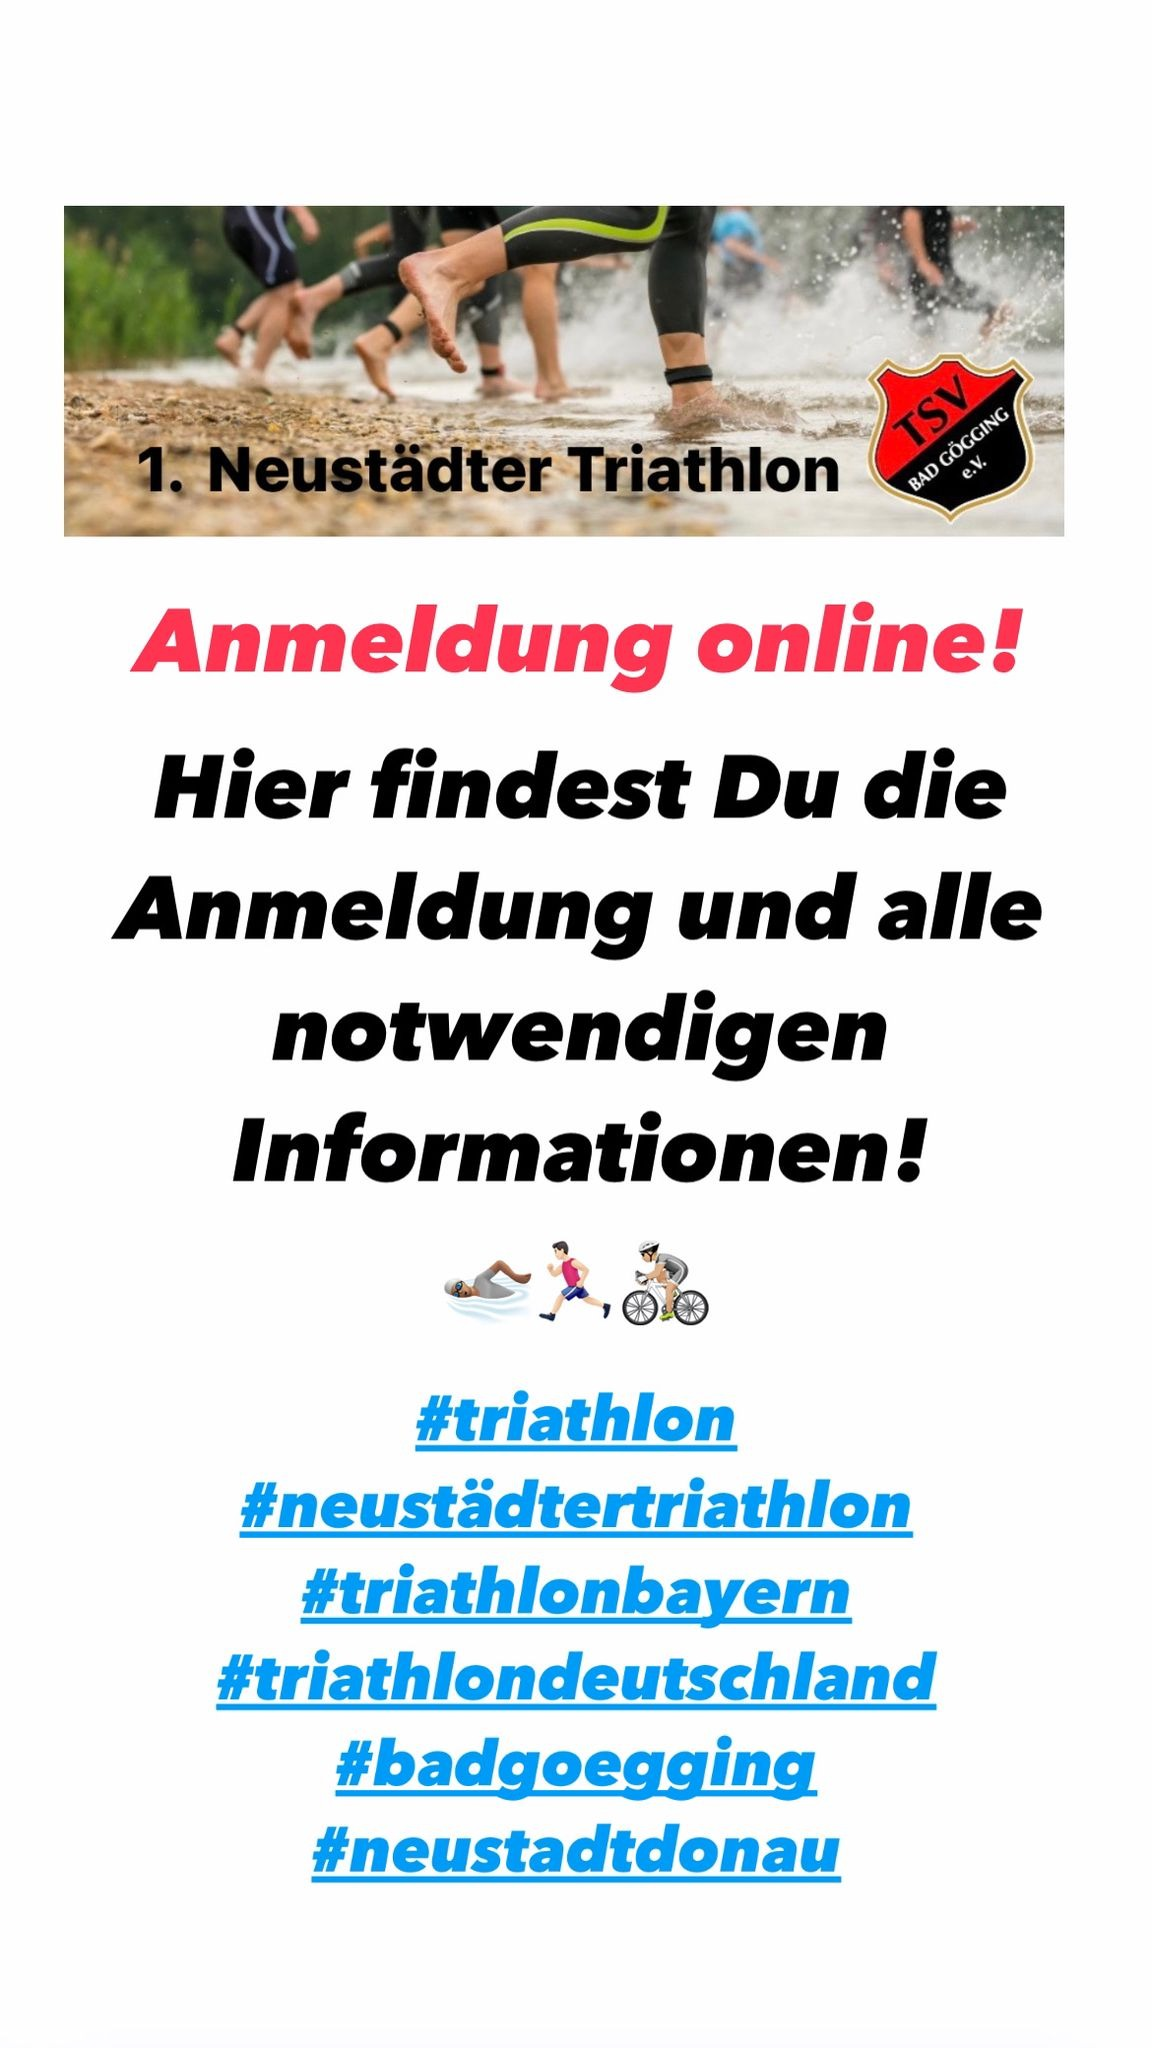 triathlon anmeldung online